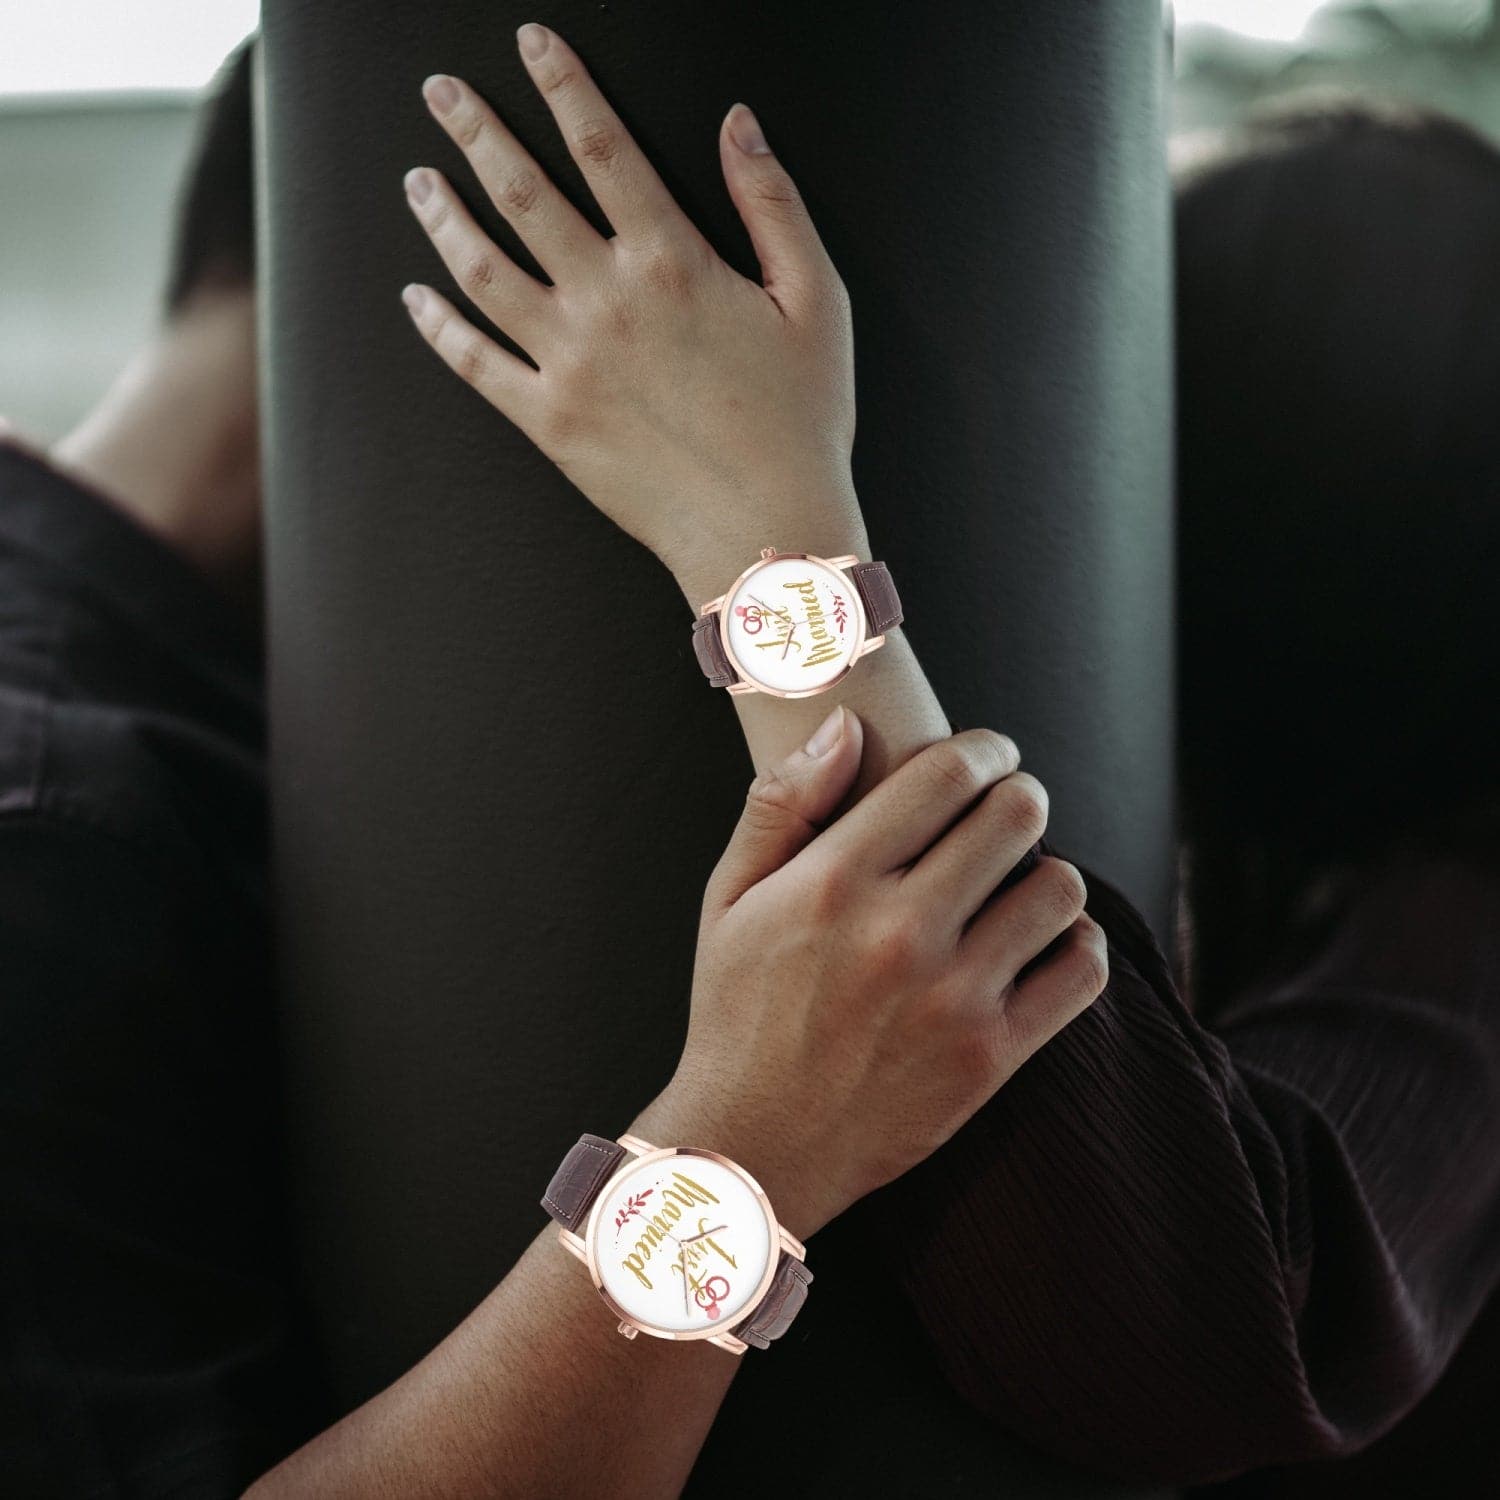 Just Married, Wedding gift,  Instafamous Wide Type Quartz watch, by Sensus Studio Design